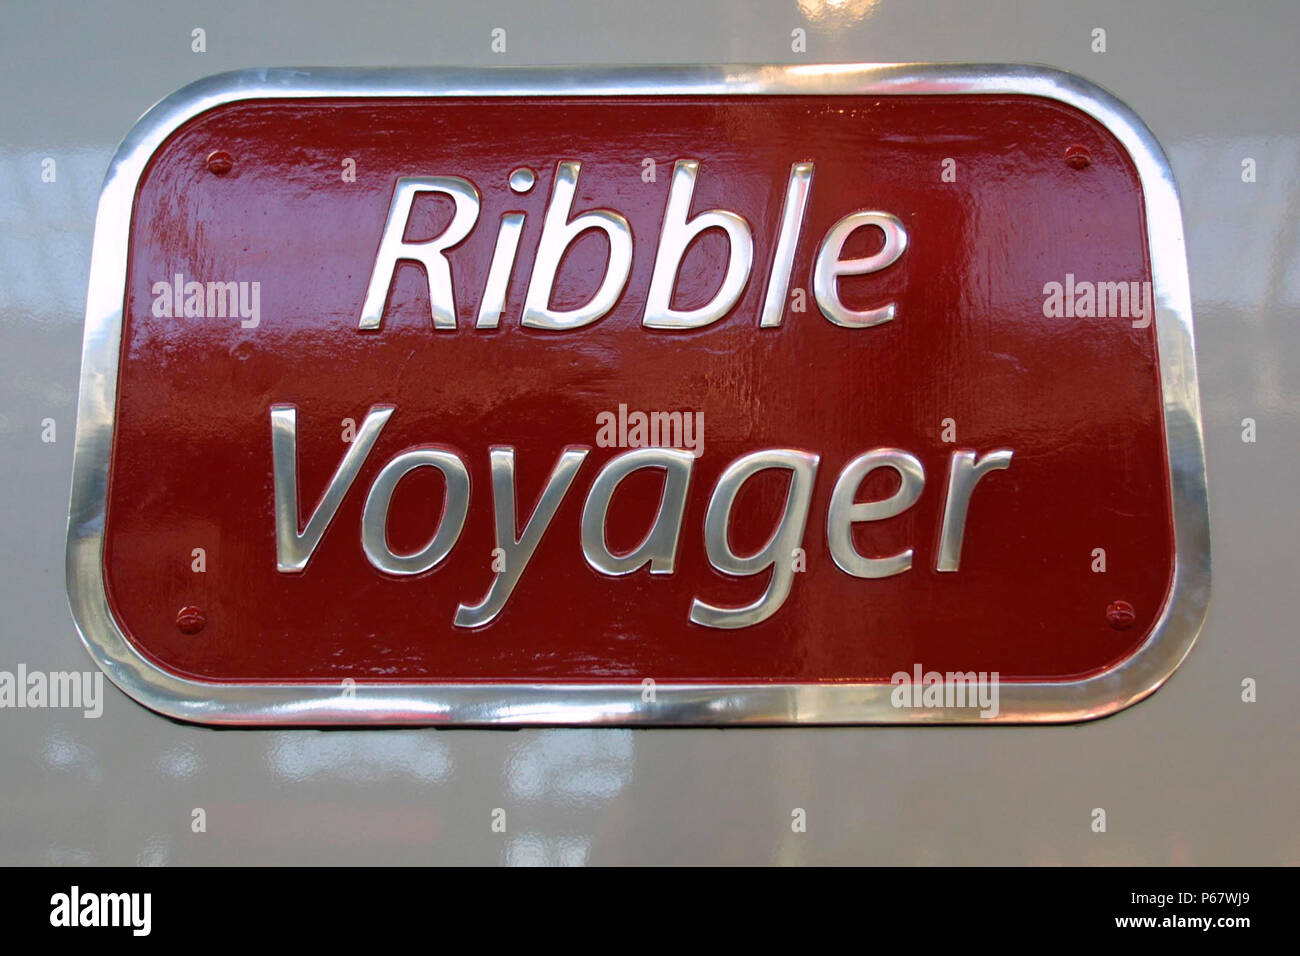 La plaque signalétique des Virgin Trains Voyager Ribble, 2004 Banque D'Images